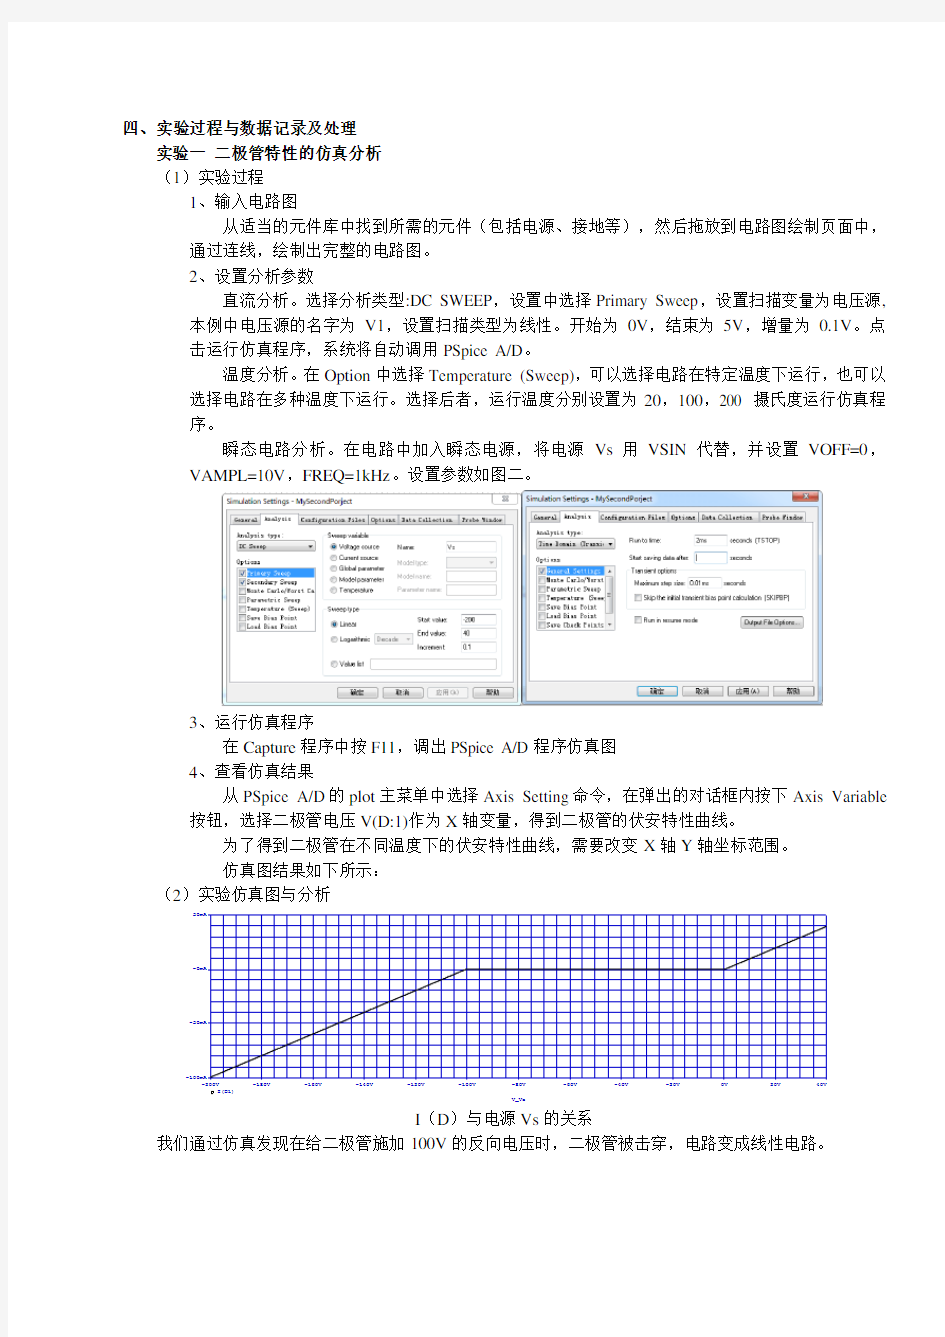 浙江大学电子电路设计-第二周报告-OrCAD-分享版